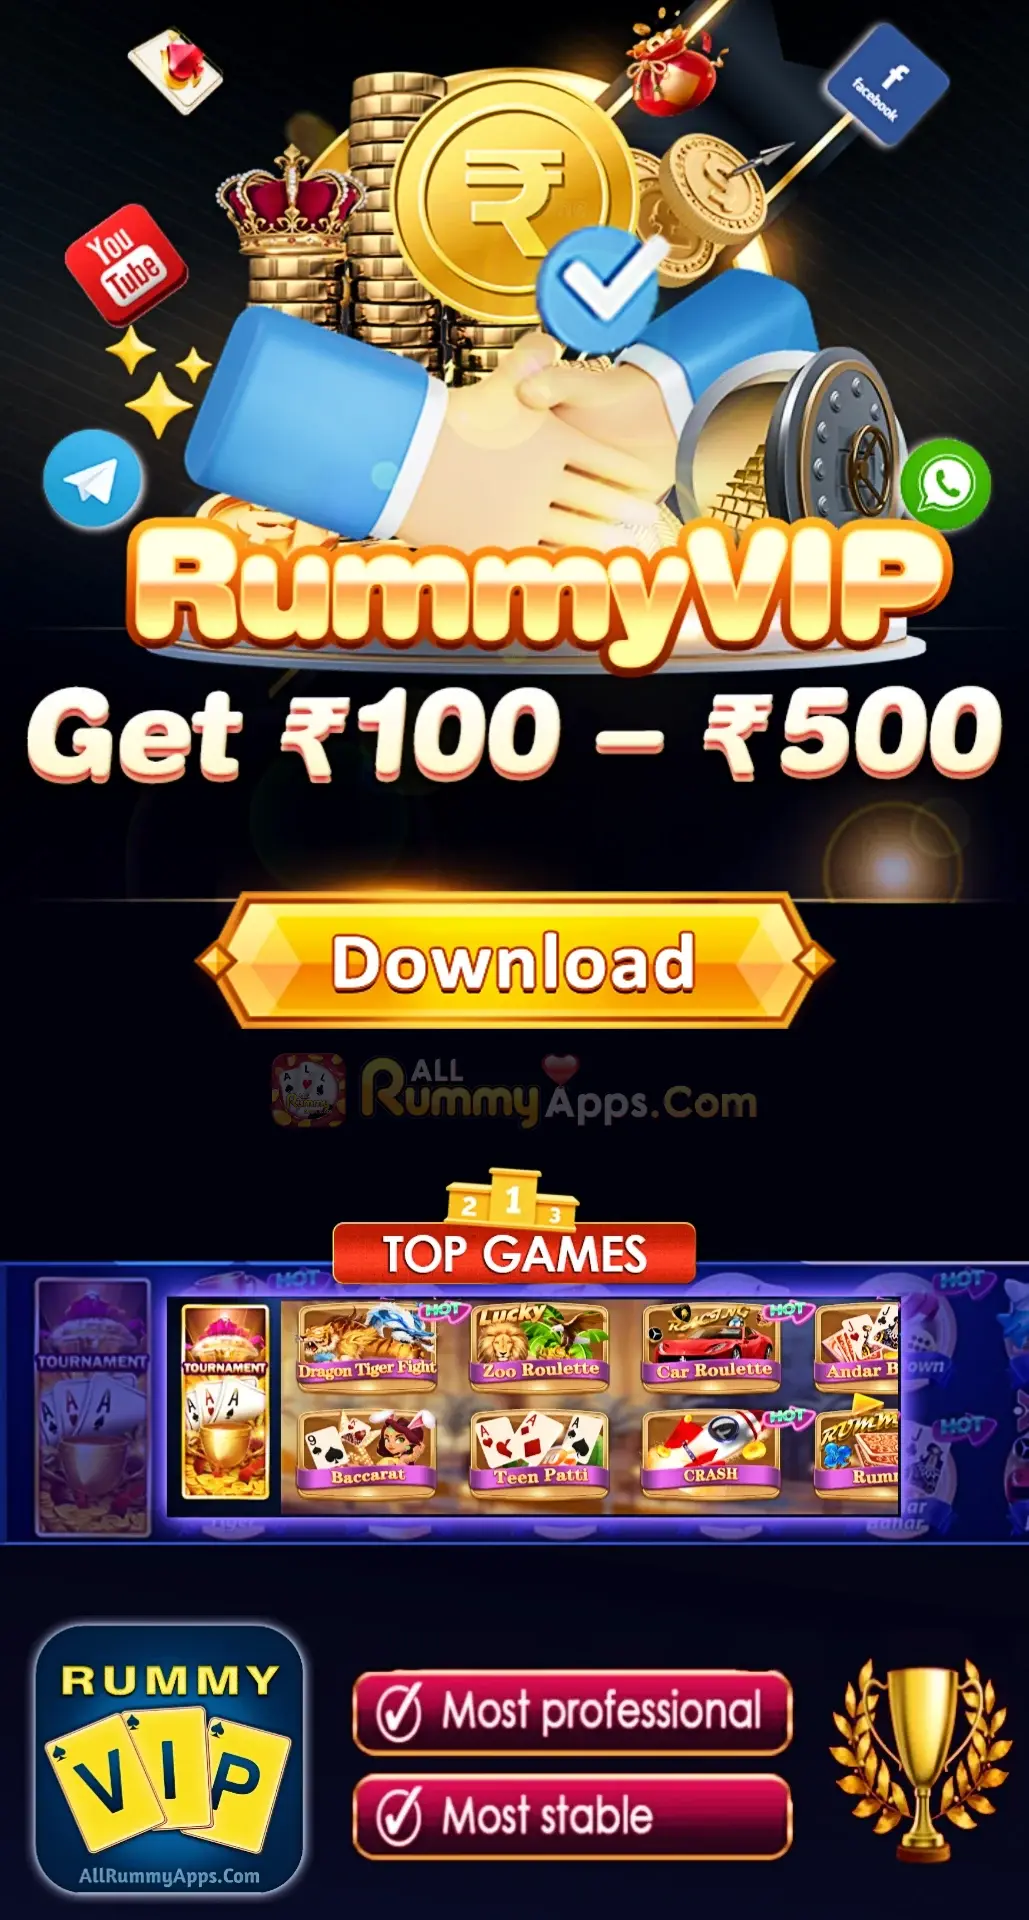 Rummy VIP App All Rummy App List